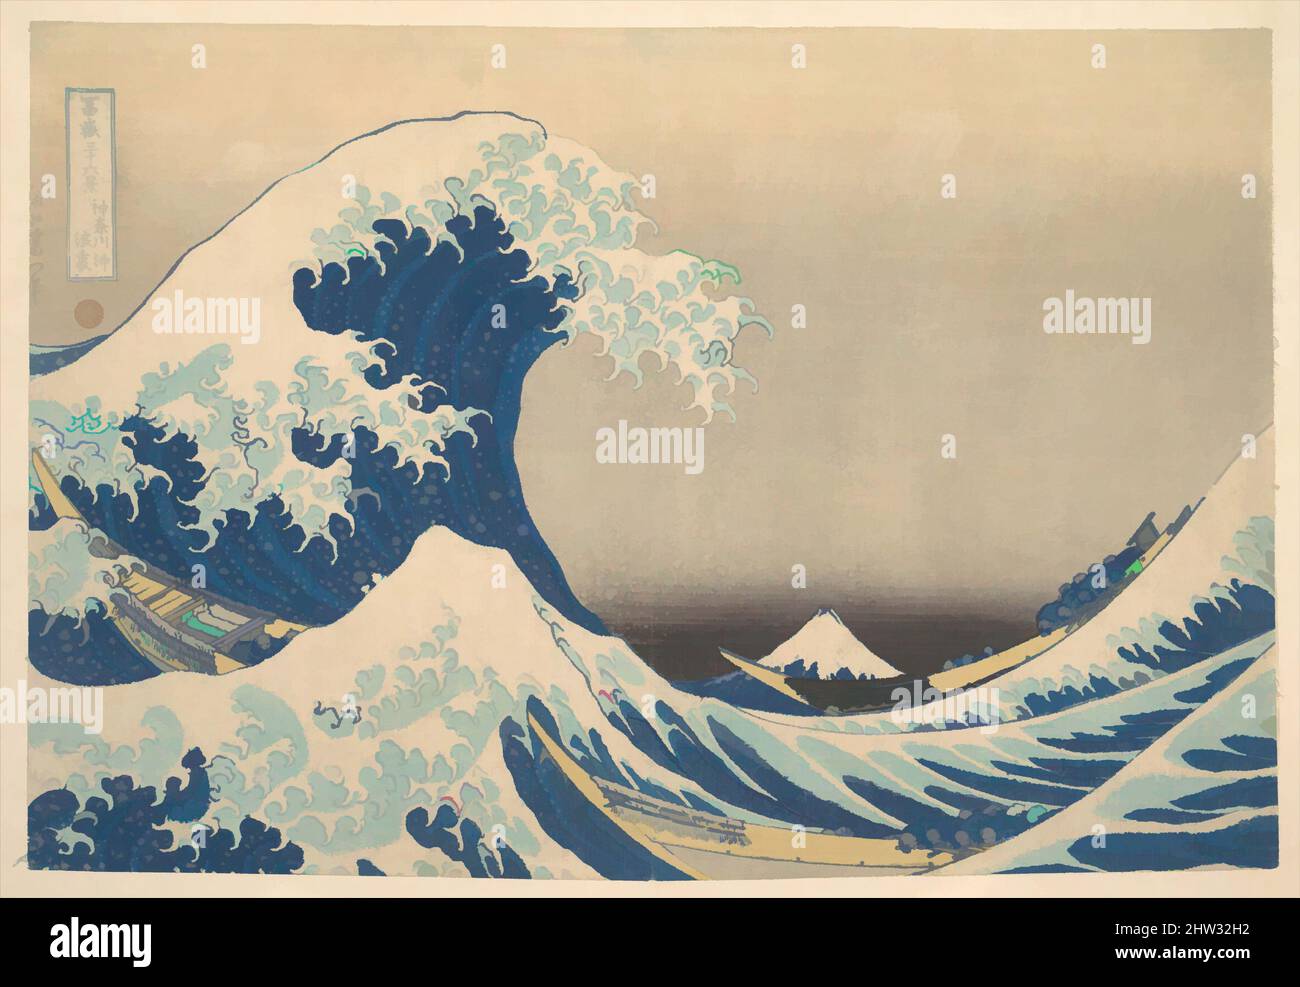 Kunst inspiriert von 冨嶽三十六景 神奈川沖浪裏, Under the Wave off Kanagawa (Kanagawa oki nami ura), auch bekannt als die große Welle, aus der Serie 36 Ansichten des Fuji-Berges (Fugaku sanjūrokkei), Edo-Periode (1615–1868), ca. 1830–32, Japan, Polychromer Holzschnitt; Tusche und Farbe auf Papier, 9 5/8 x, Klassisches Werk, modernisiert von Artotop mit einem Schuss Moderne. Formen, Farbe und Wert, auffällige visuelle Wirkung auf Kunst. Emotionen durch Freiheit von Kunstwerken auf zeitgemäße Weise. Eine zeitlose Botschaft, die eine wild kreative neue Richtung verfolgt. Künstler, die sich dem digitalen Medium zuwenden und die Artotop NFT erschaffen Stockfoto